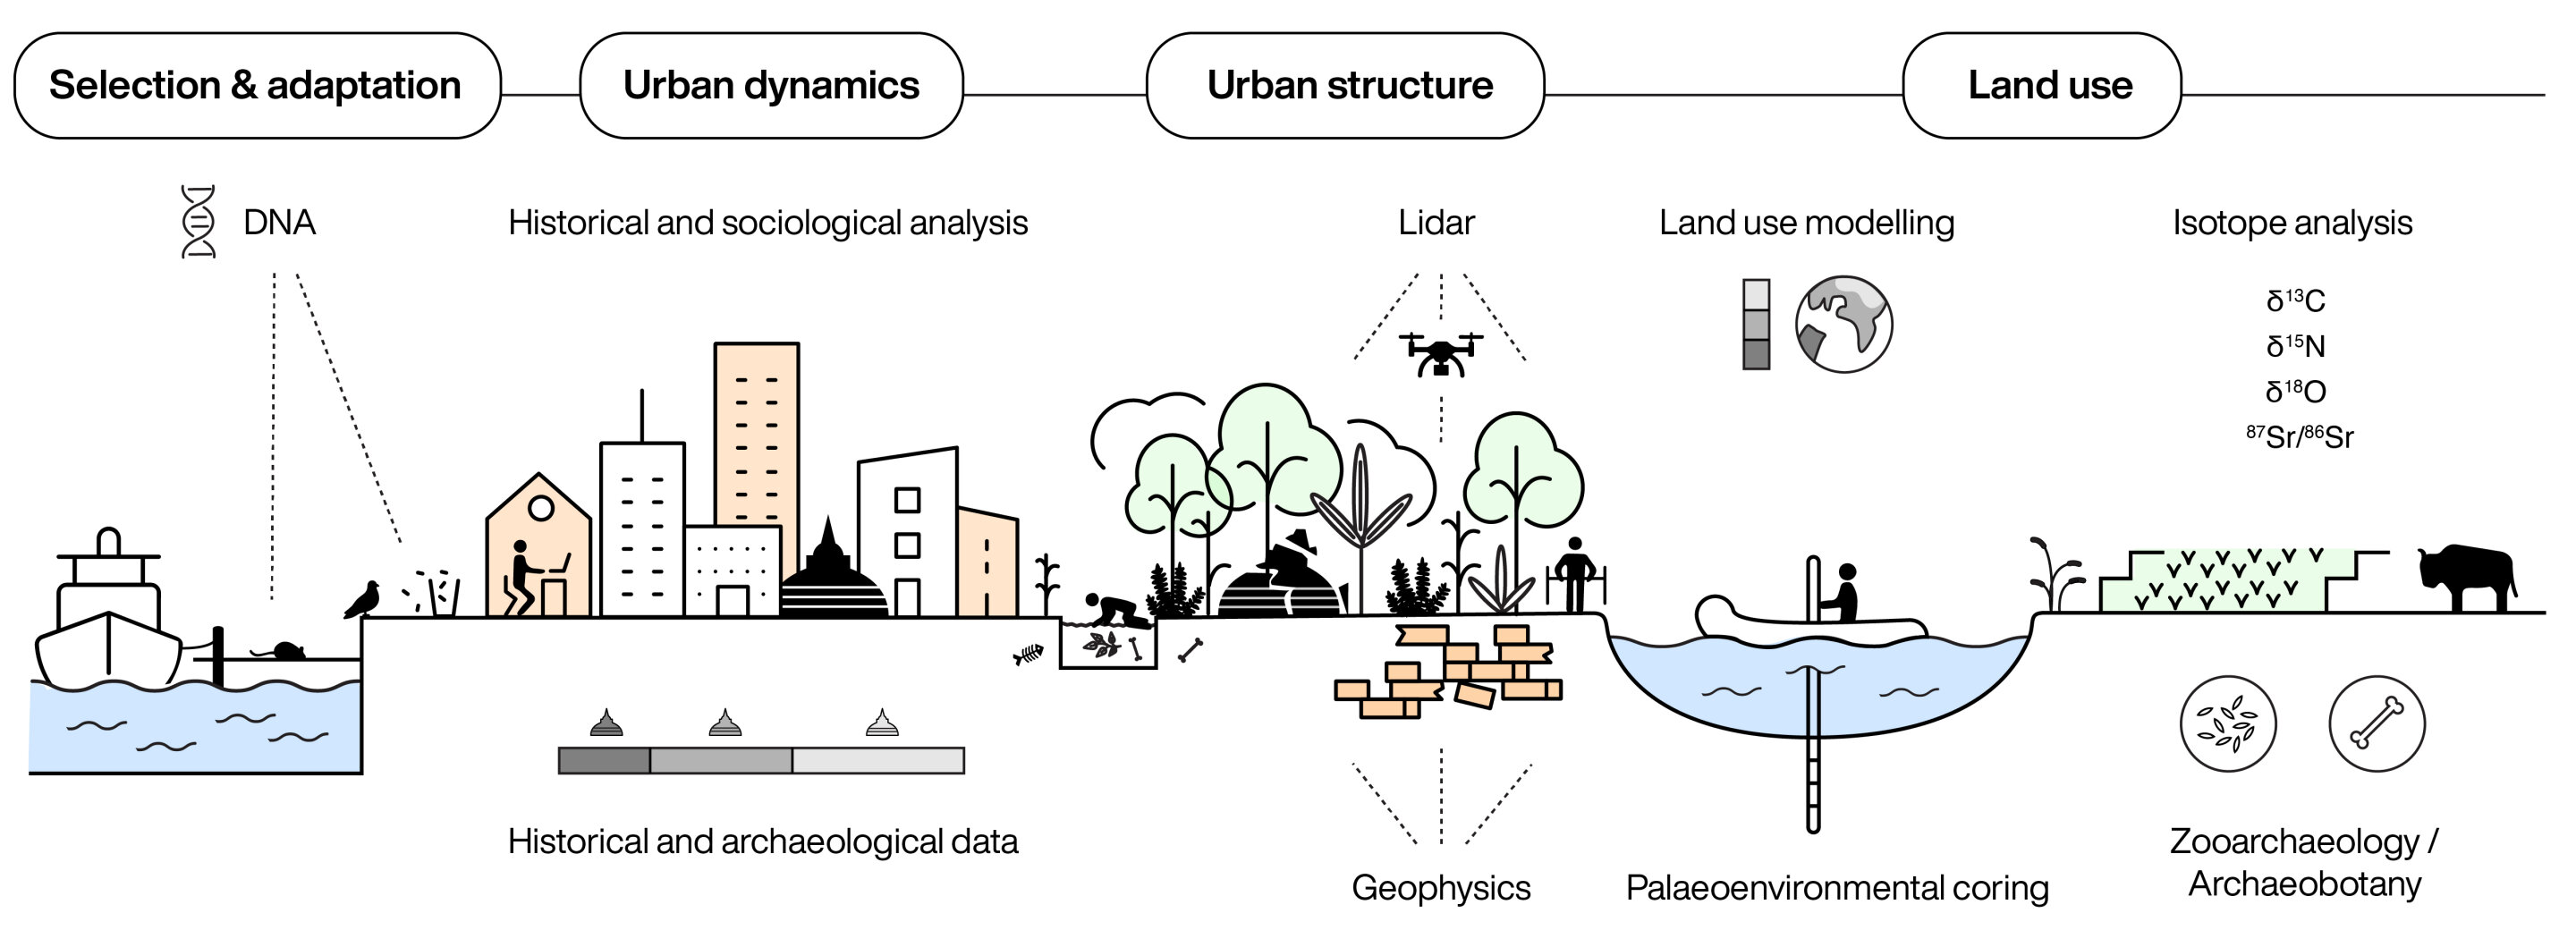 Las ciudades antiguas proporcionan conjuntos de datos clave para la planificación, las políticas y las previsiones urbanas en el Antropoceno